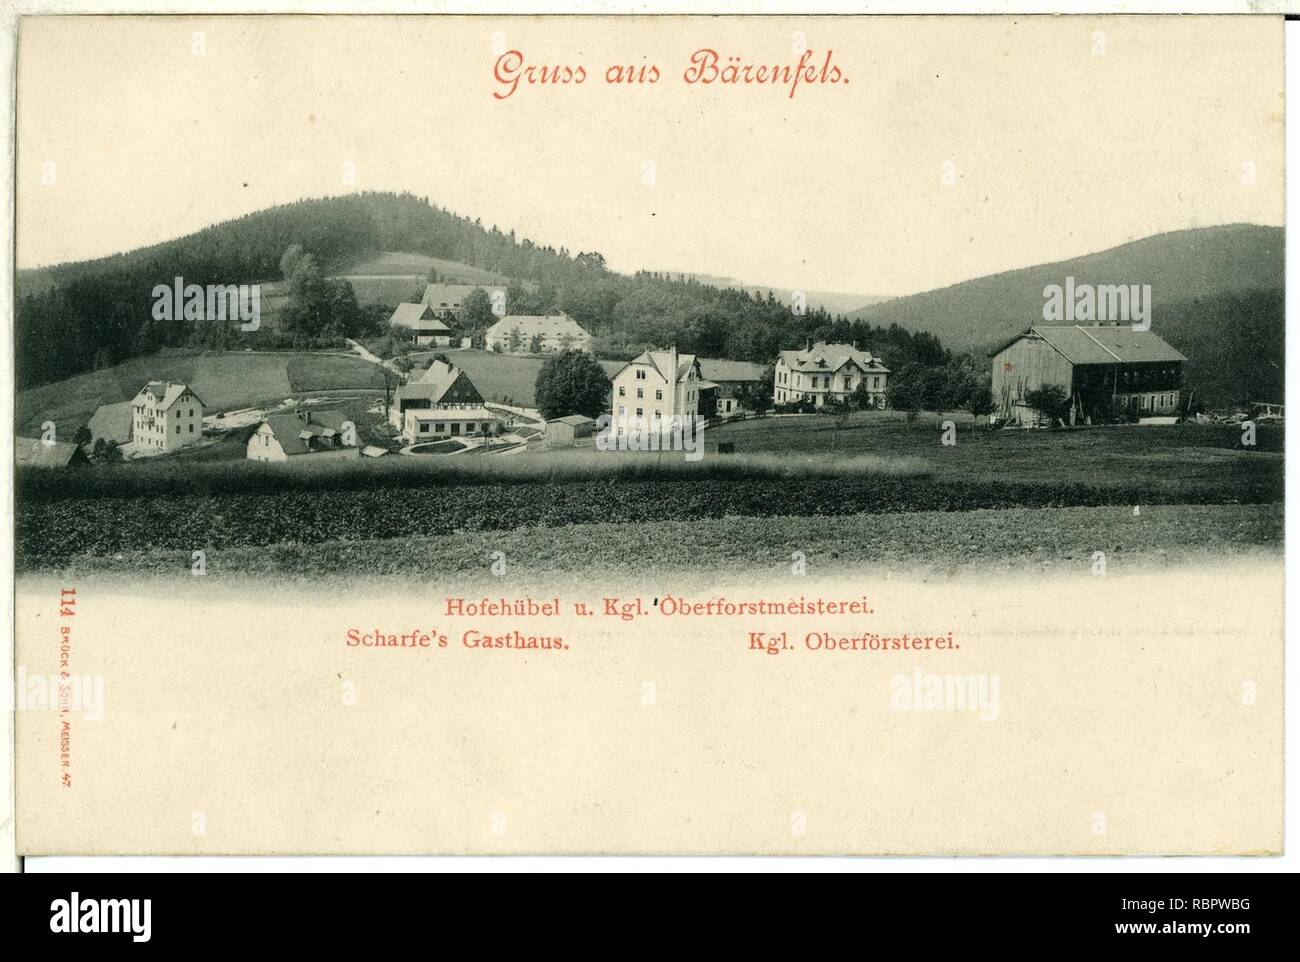 00114 - Bärenfels-1898 - Hofehübel und Oberförsterei, Scharfes Gasthaus-Brück&Sohn Kunstverlag. Stockfoto